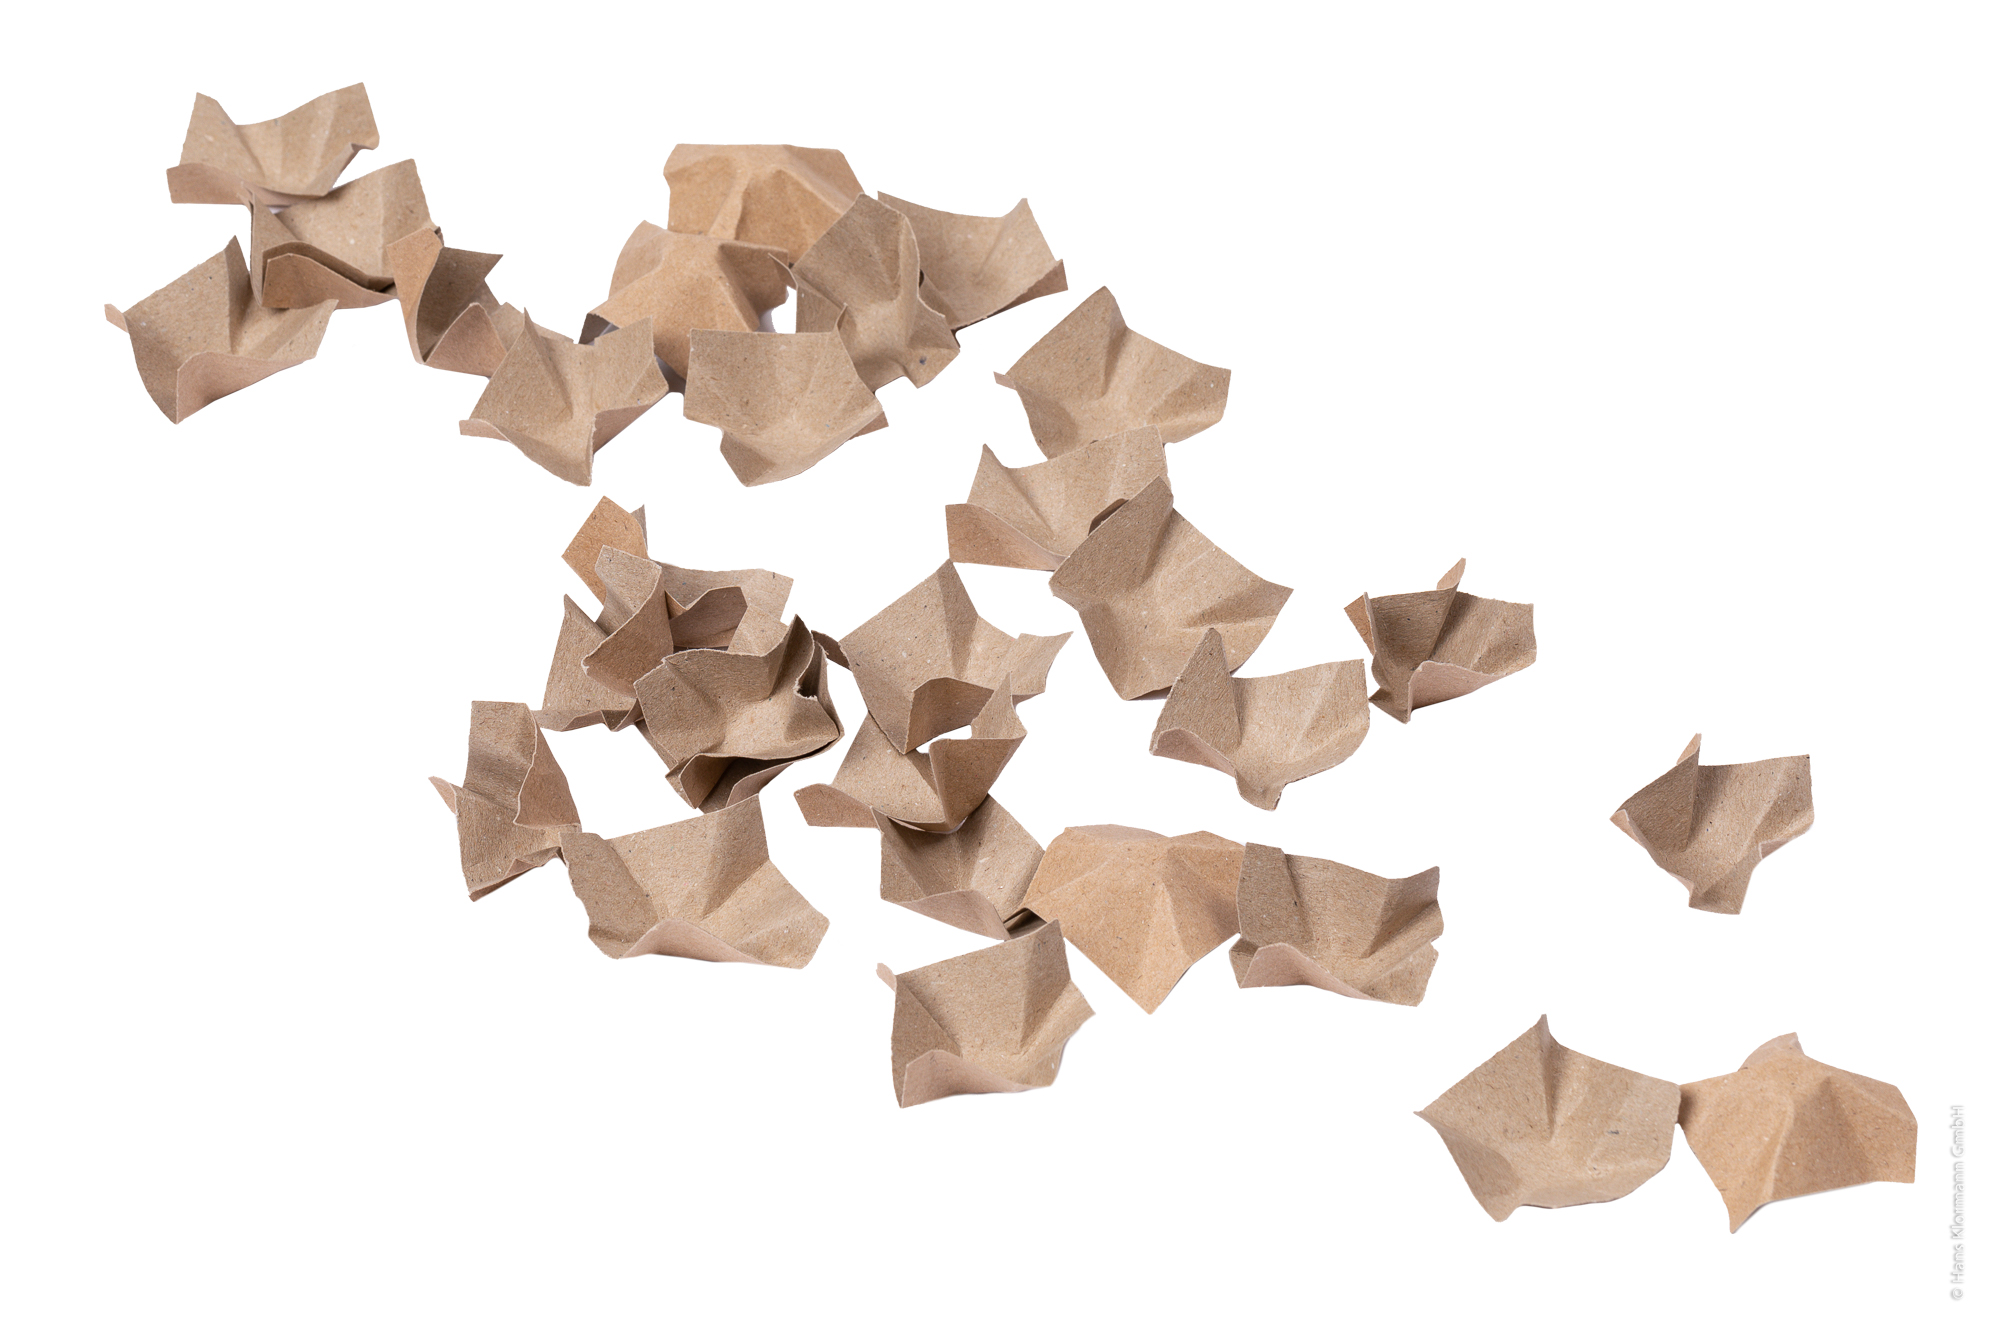 5 Säcke Papier-Verpackungschips à 400 Liter Füllmaterial Papierpolster PAPERFILL 